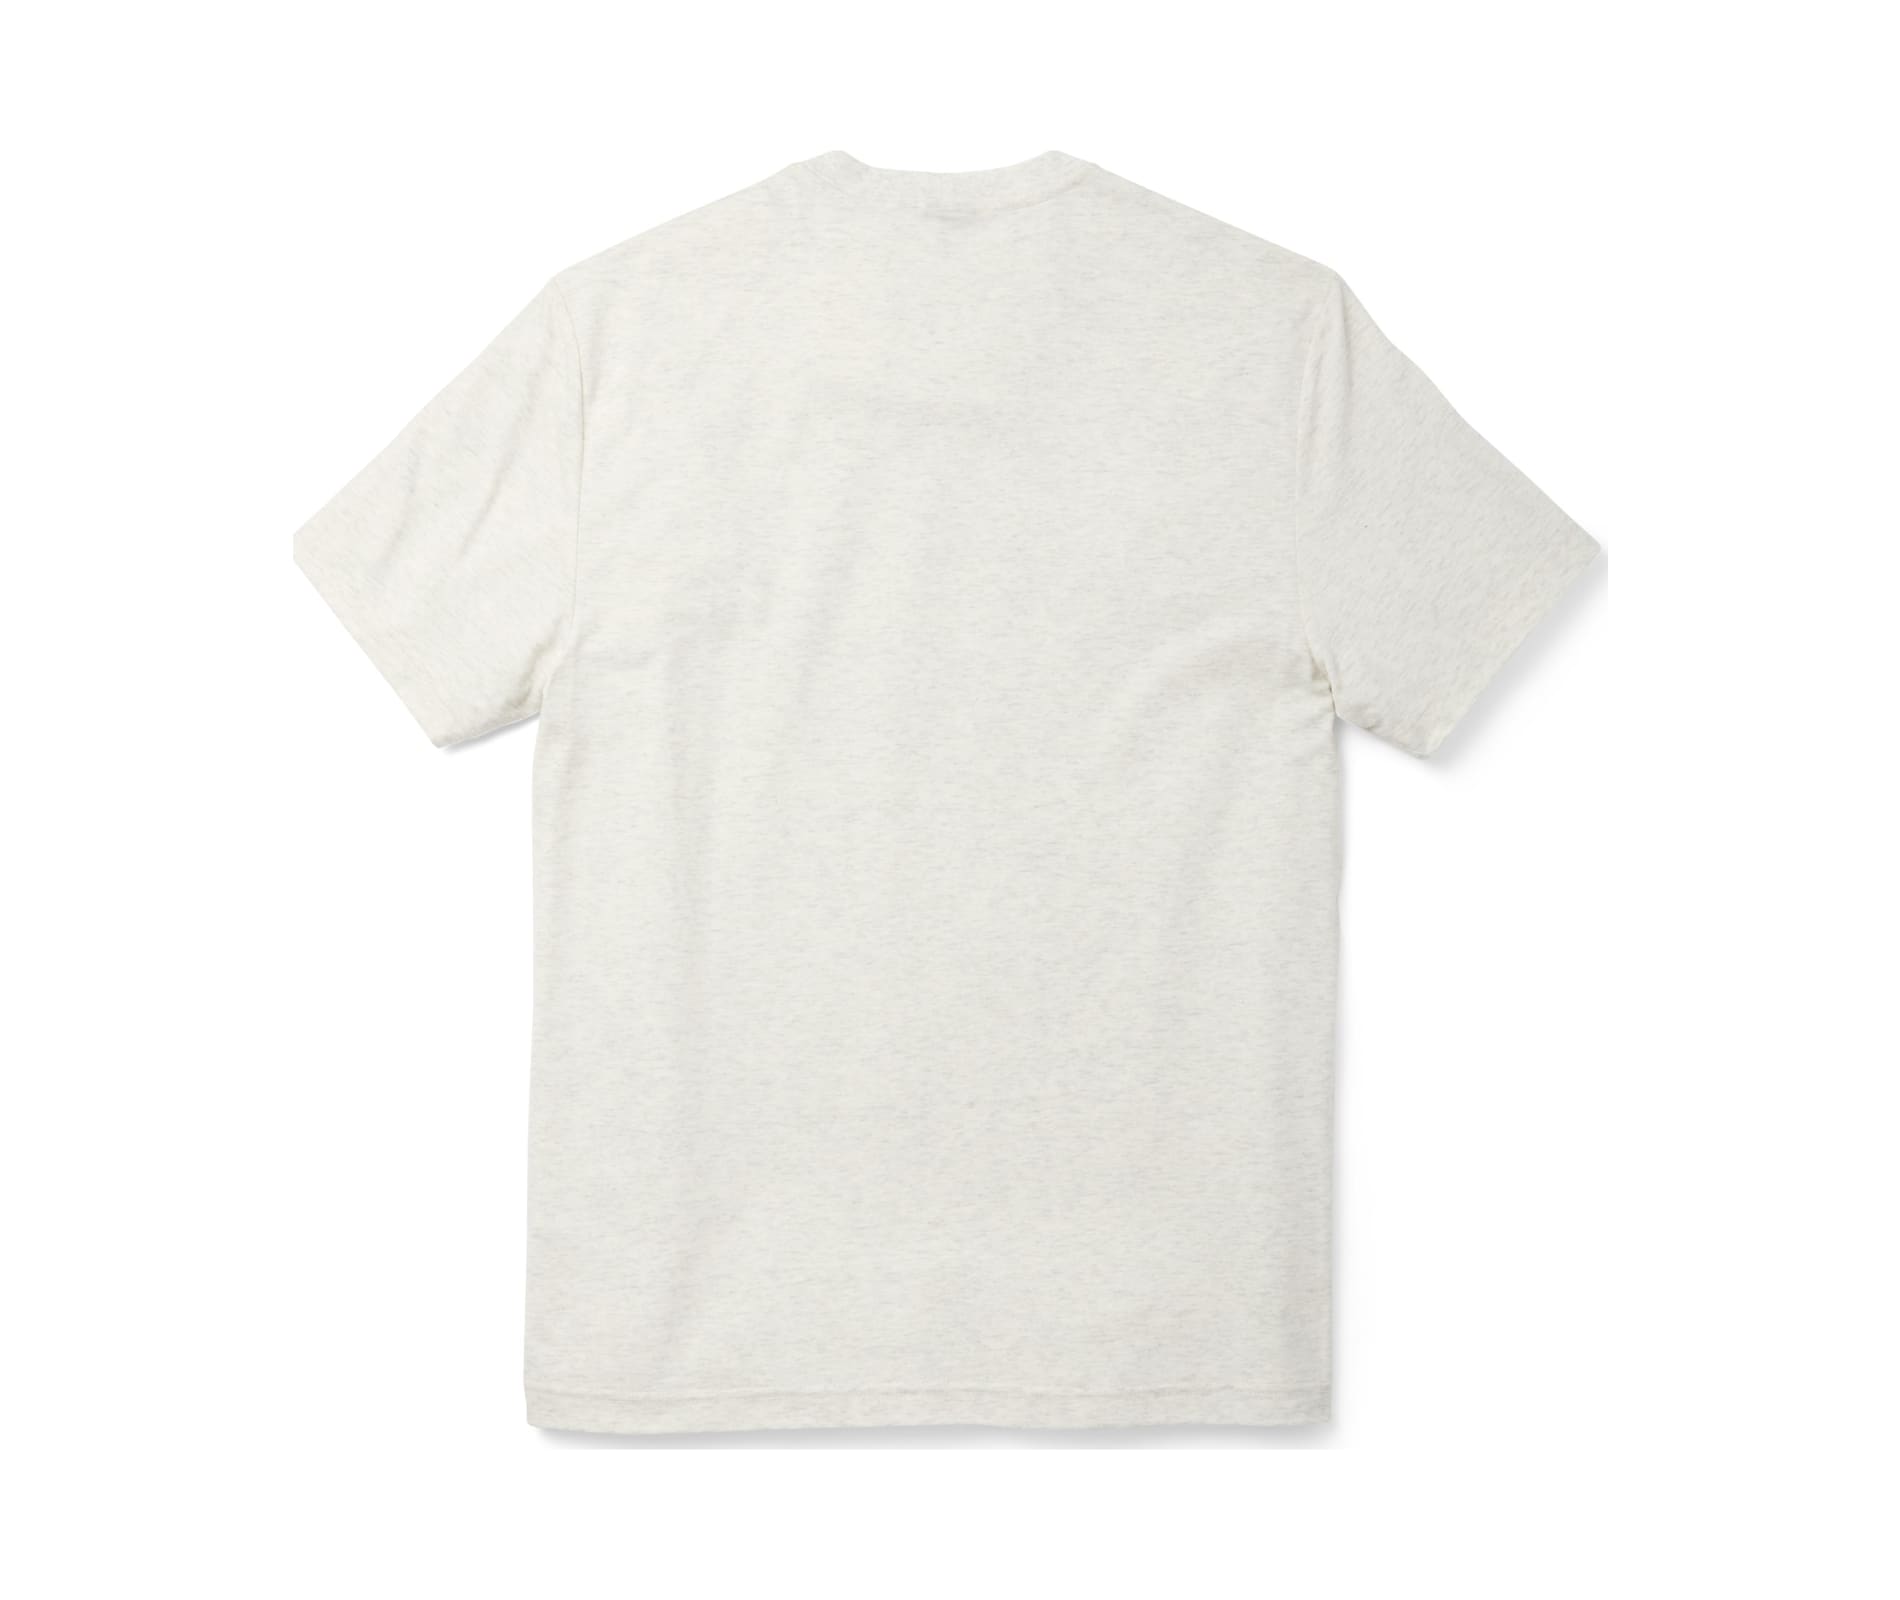 Filson Men's Buckshot T-shirt - White/ Unfailing Goods - Large